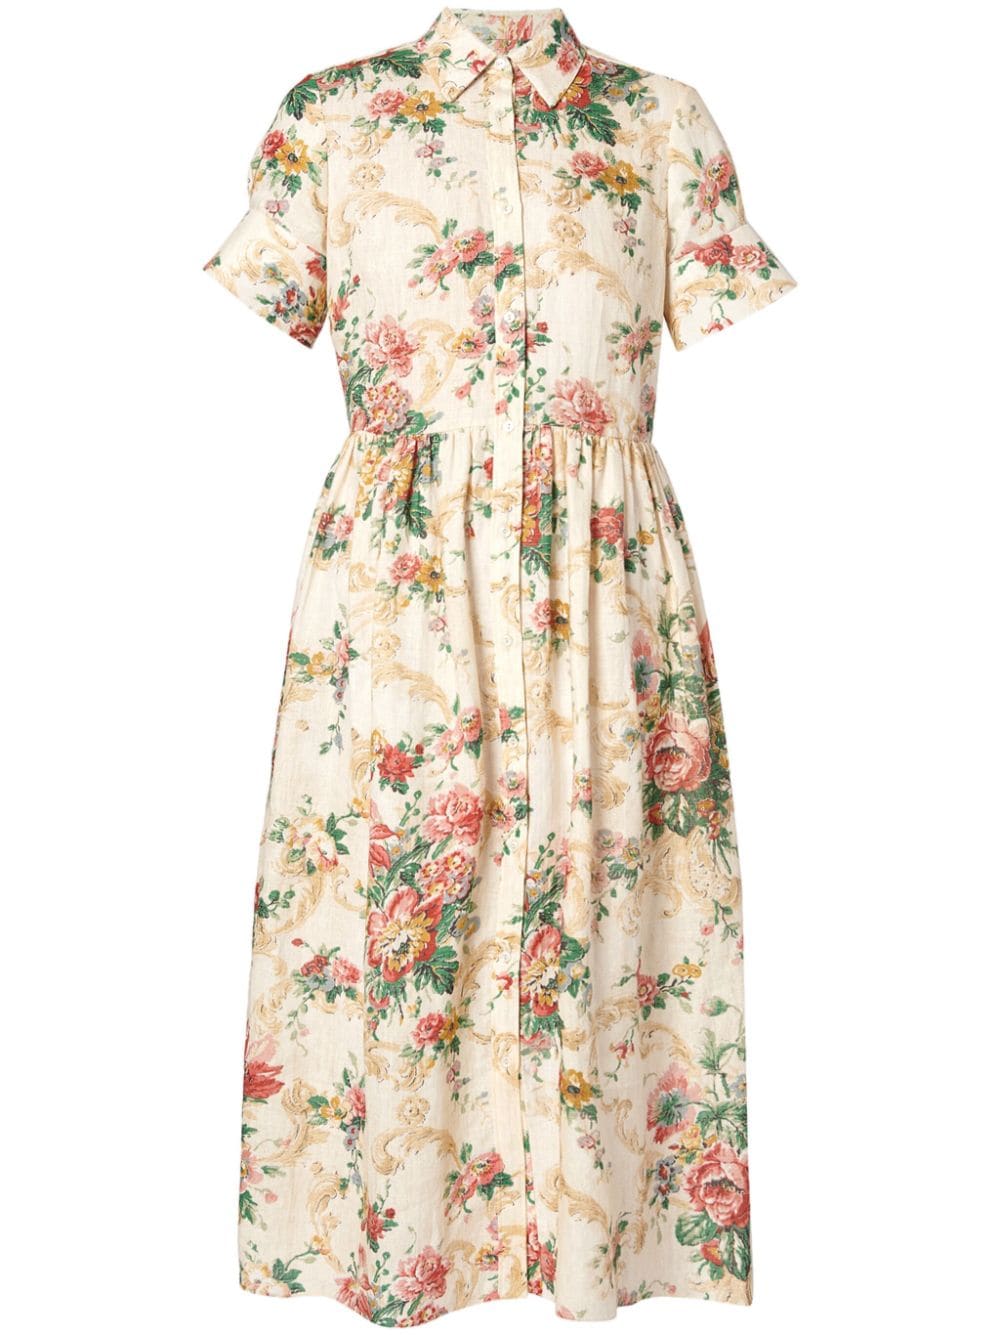 ERDEM floral-print linen shirt dress - Neutrals